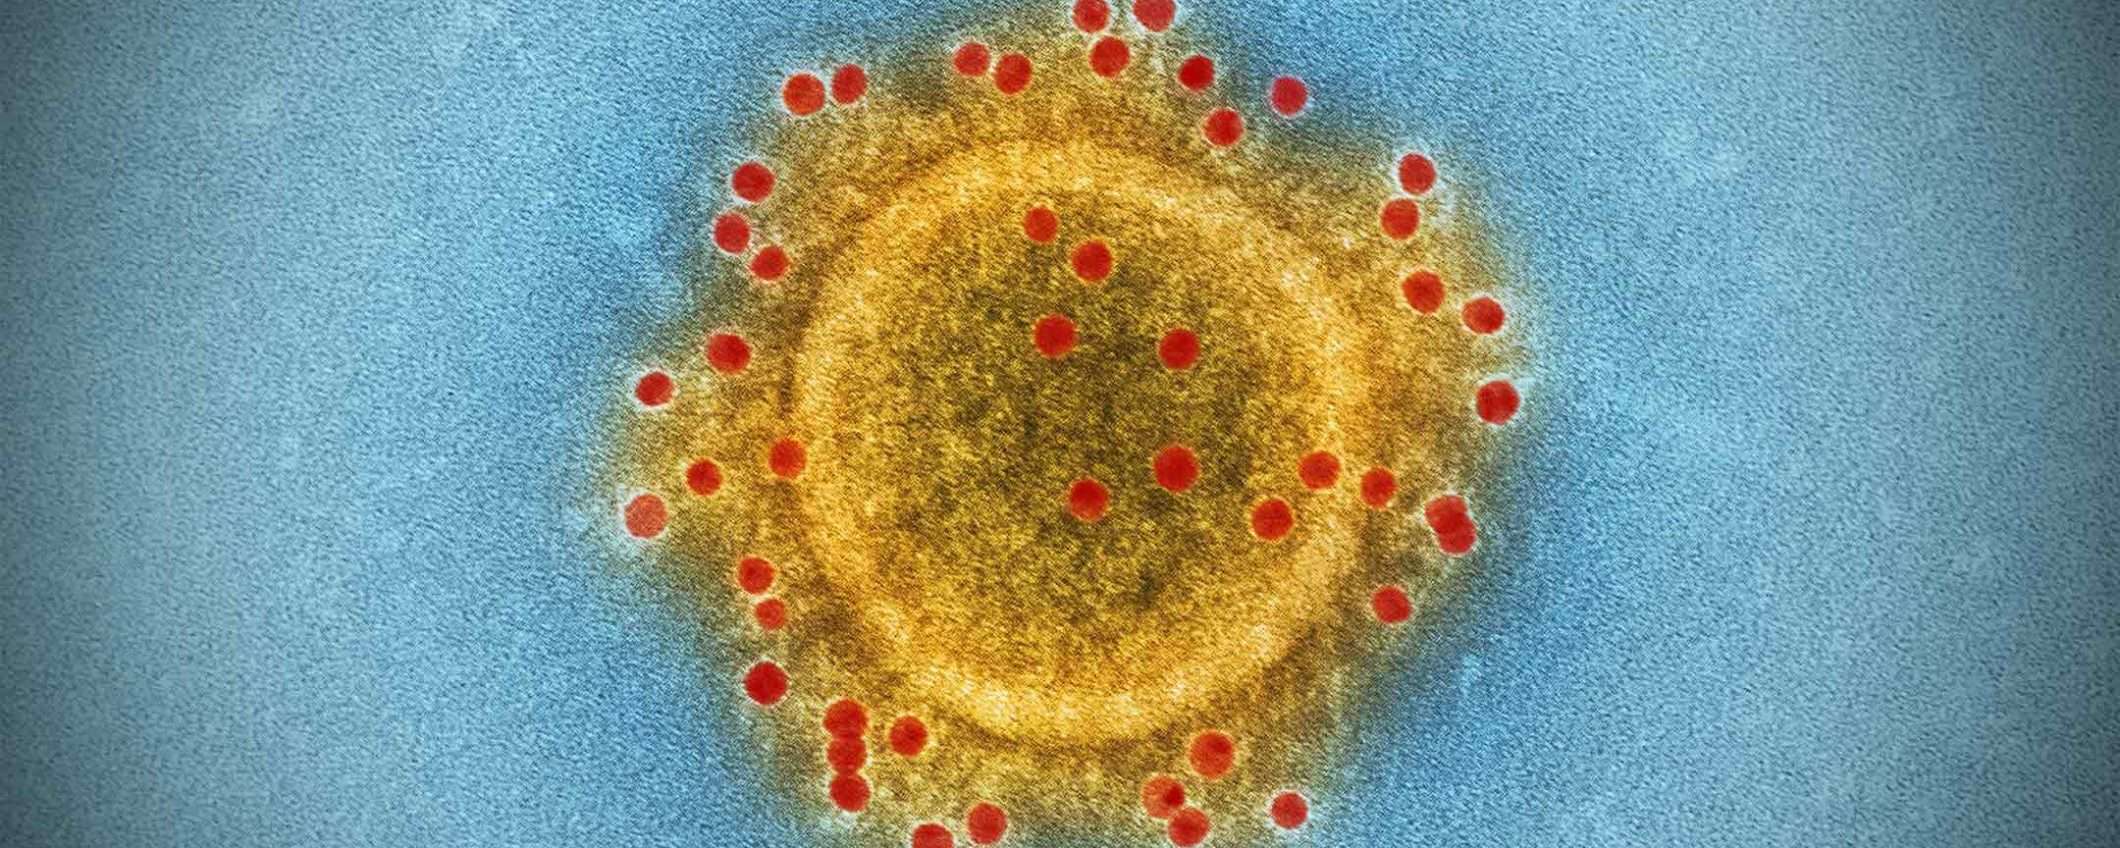 Coronavirus, le parole sono importanti: pandemia